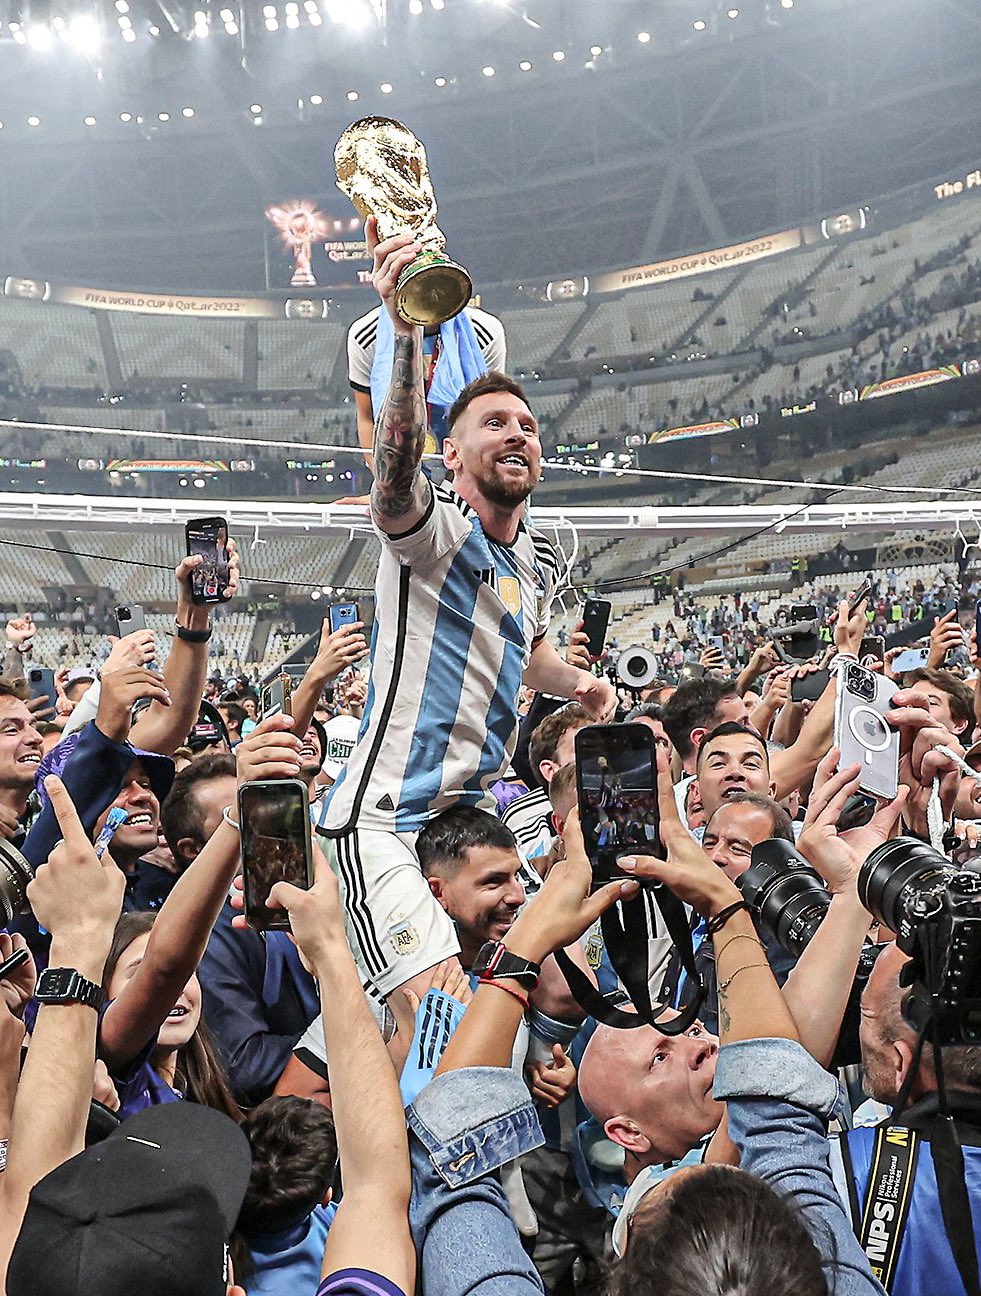 Các fan của Messi sẽ không muốn bỏ lỡ hình ảnh chàng cầu thủ này khi anh giành được chiến thắng và cúp của mình cùng những người bạn cùng phòng trong đợt giải đấu mới nhất. Hãy cùng xem lại hành trình giành chiến thắng của Messi.